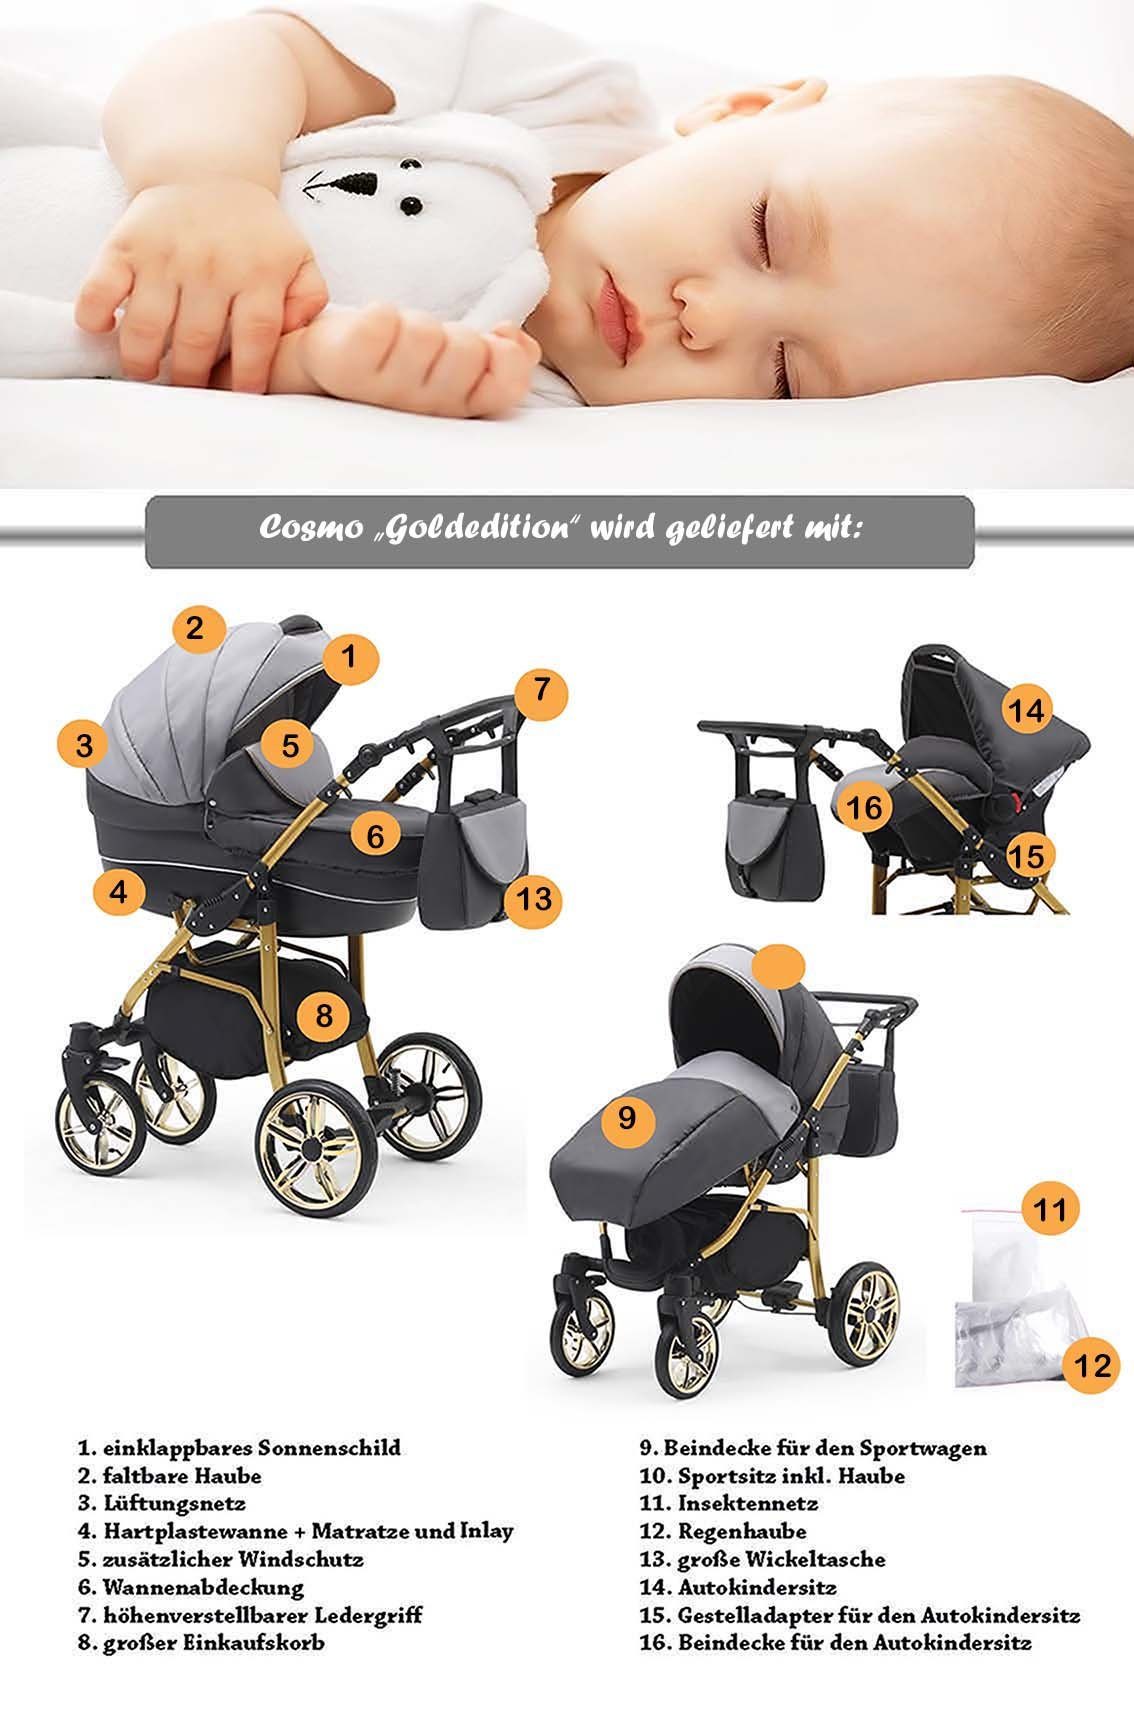 Gold- 3 1 Kinderwagen-Set Teile in Lila-Weiß-Weiß Cosmo Farben - in Kombi-Kinderwagen 46 16 babies-on-wheels